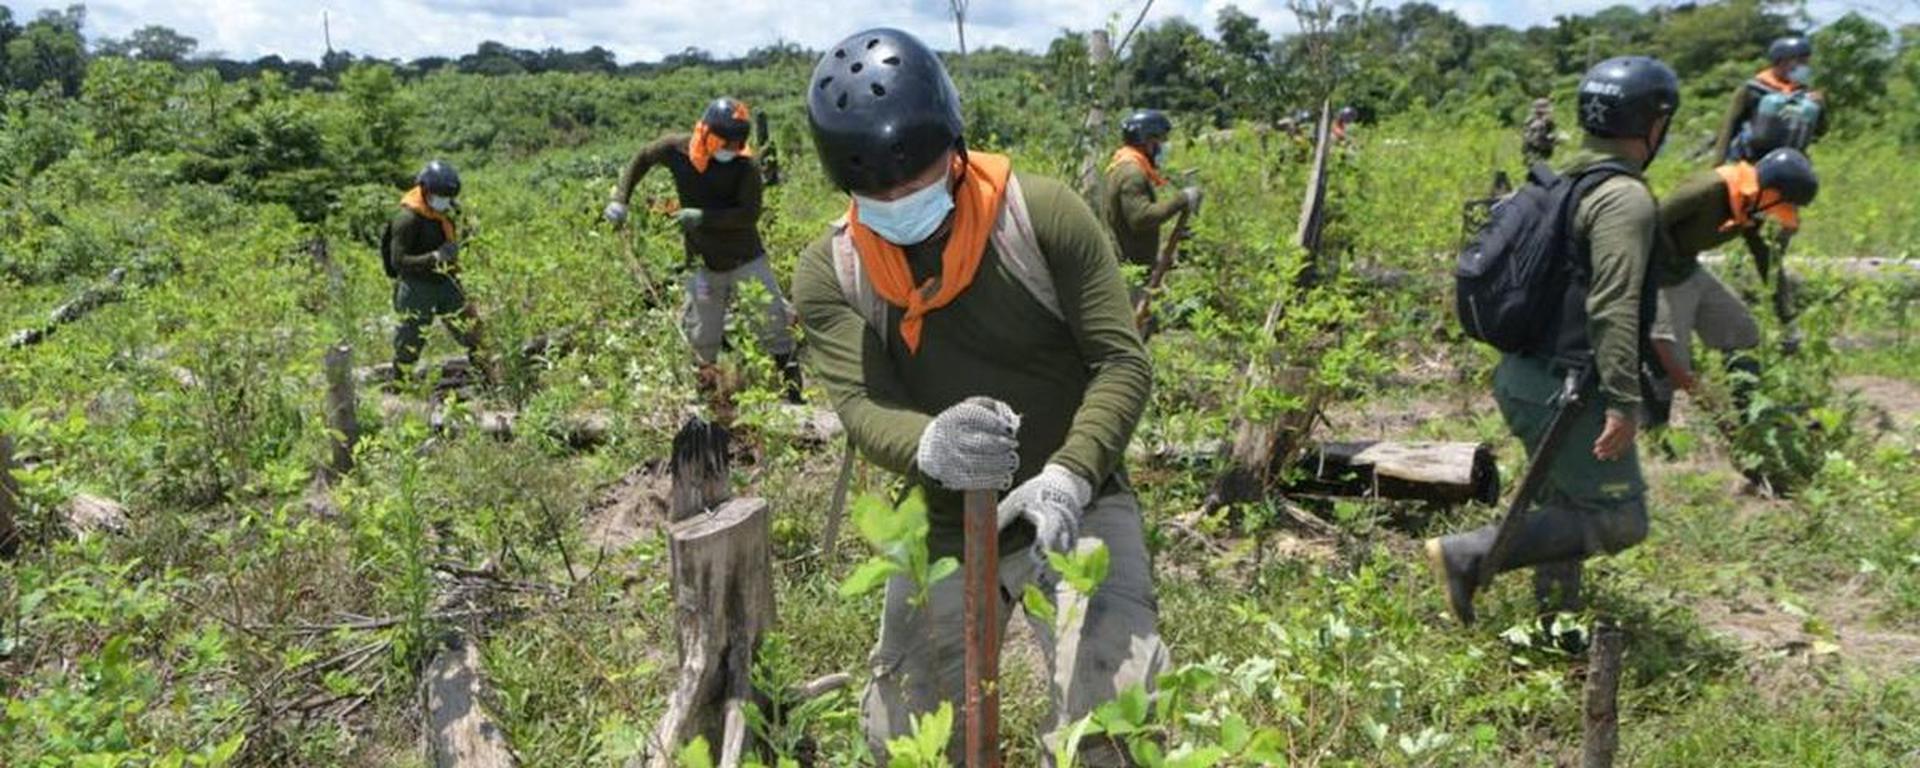 Los cultivos de hoja coca en el Perú se incrementaron en 18% durante este último año: se pasó de 80 mil a 95 mil hectáreas  | INFORME